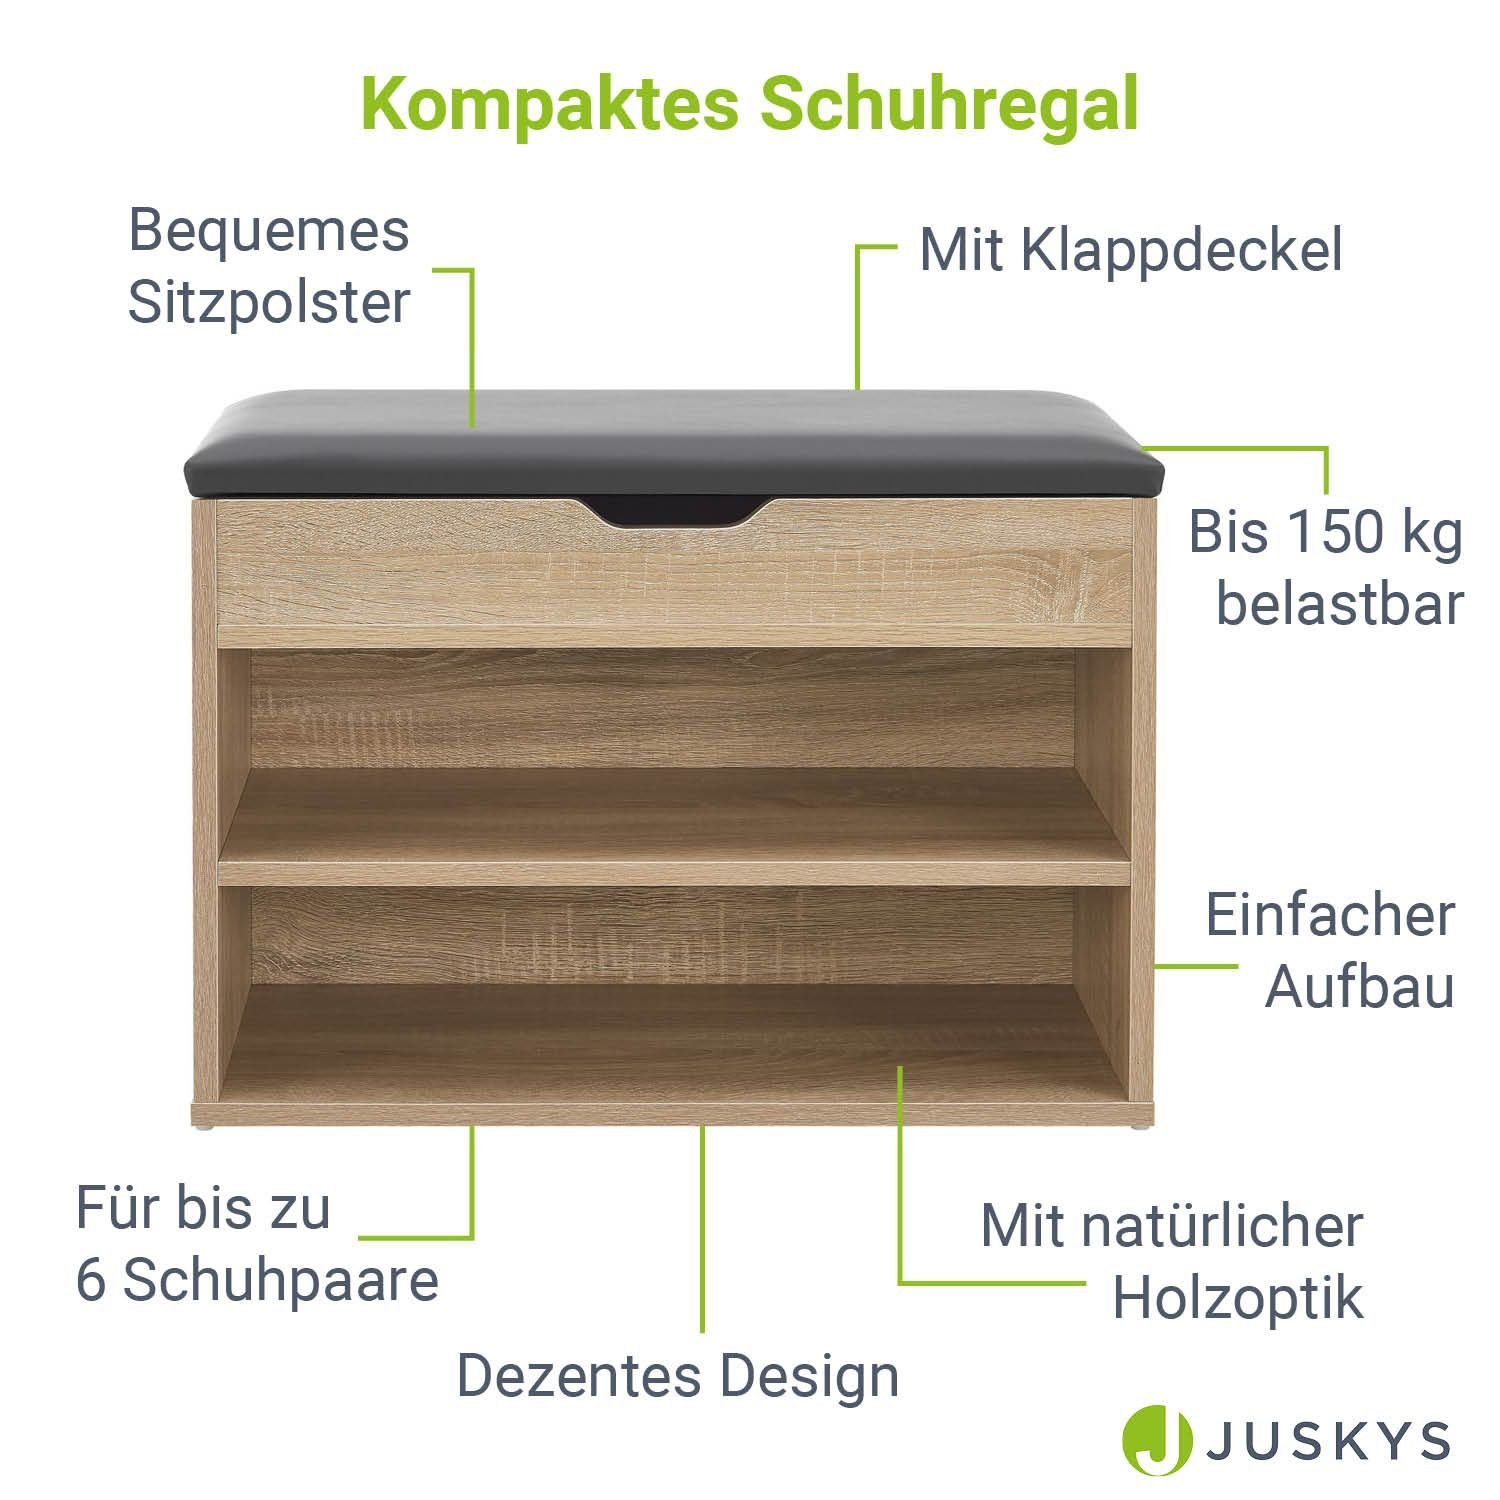 Holzoptik Oberfläche, 6 kg bis 150 Klappdeckel, Holzoptik, Grau | Paare, mit für Juskys kratzfeste Schuhregal,